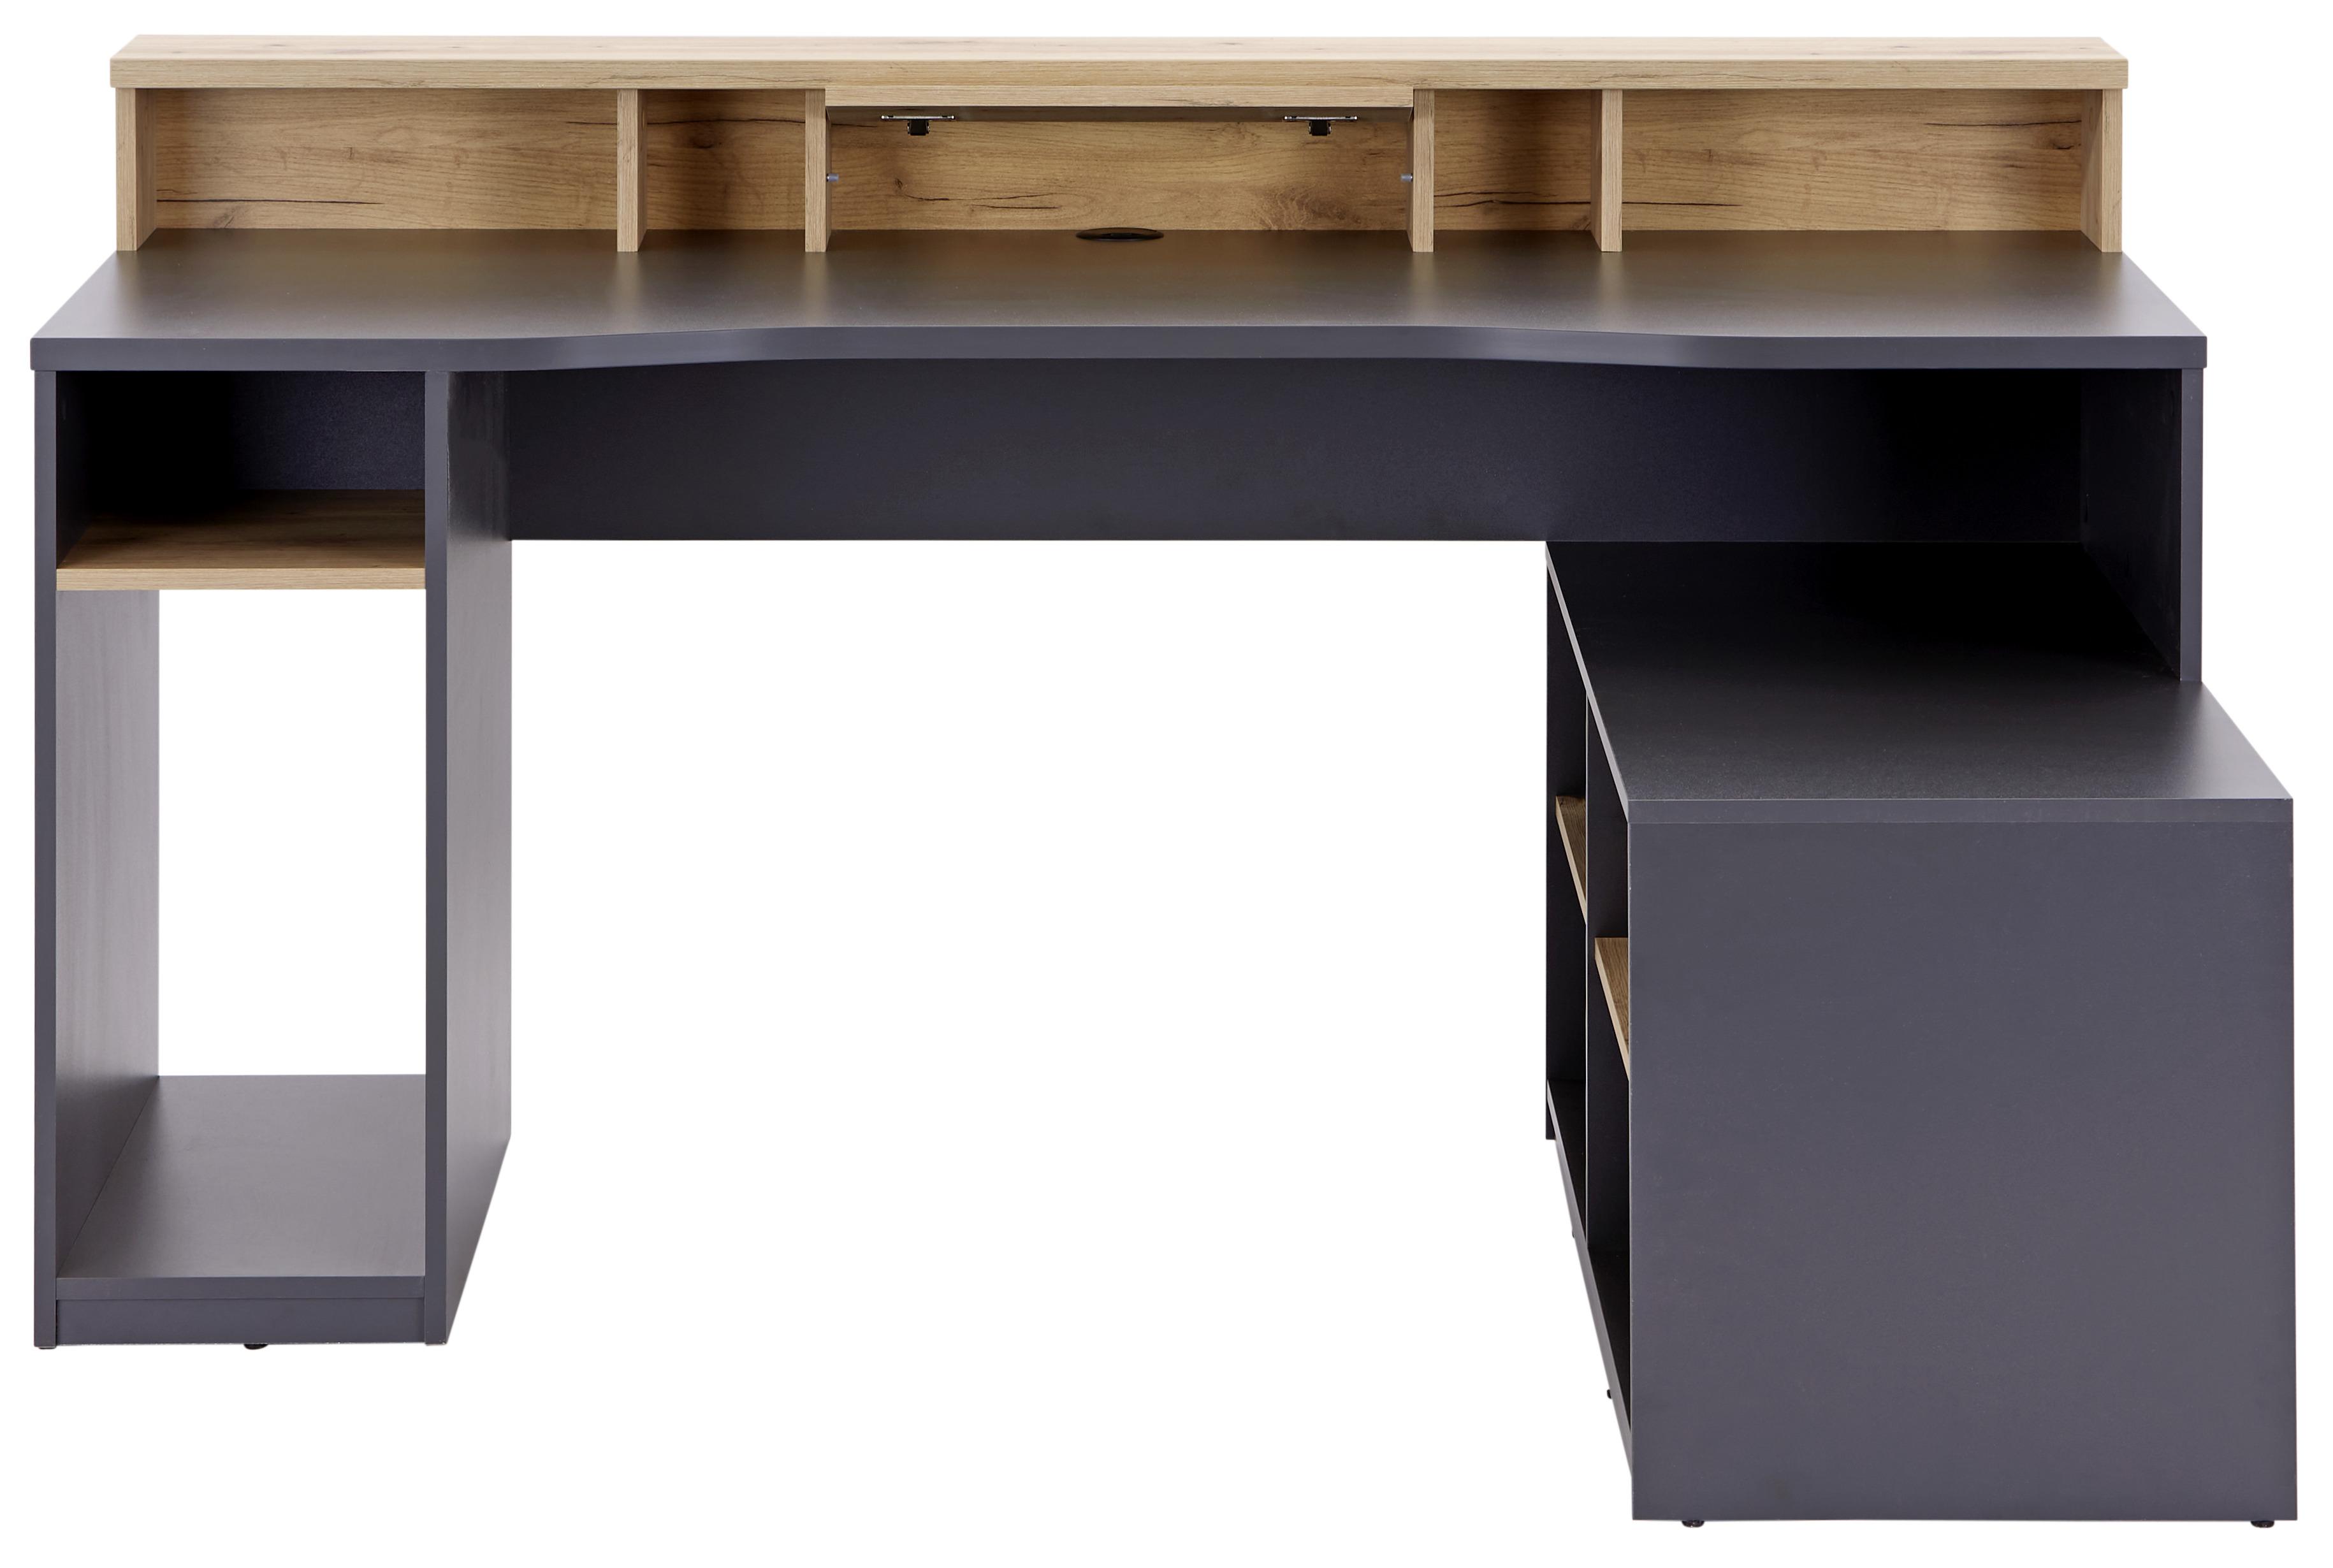 Gamingtisch mit Monitoraufsatz B160cm H 92cm Teamplayer - Eichefarben/Anthrazit, MODERN, Holzwerkstoff (160/91,5/120cm)